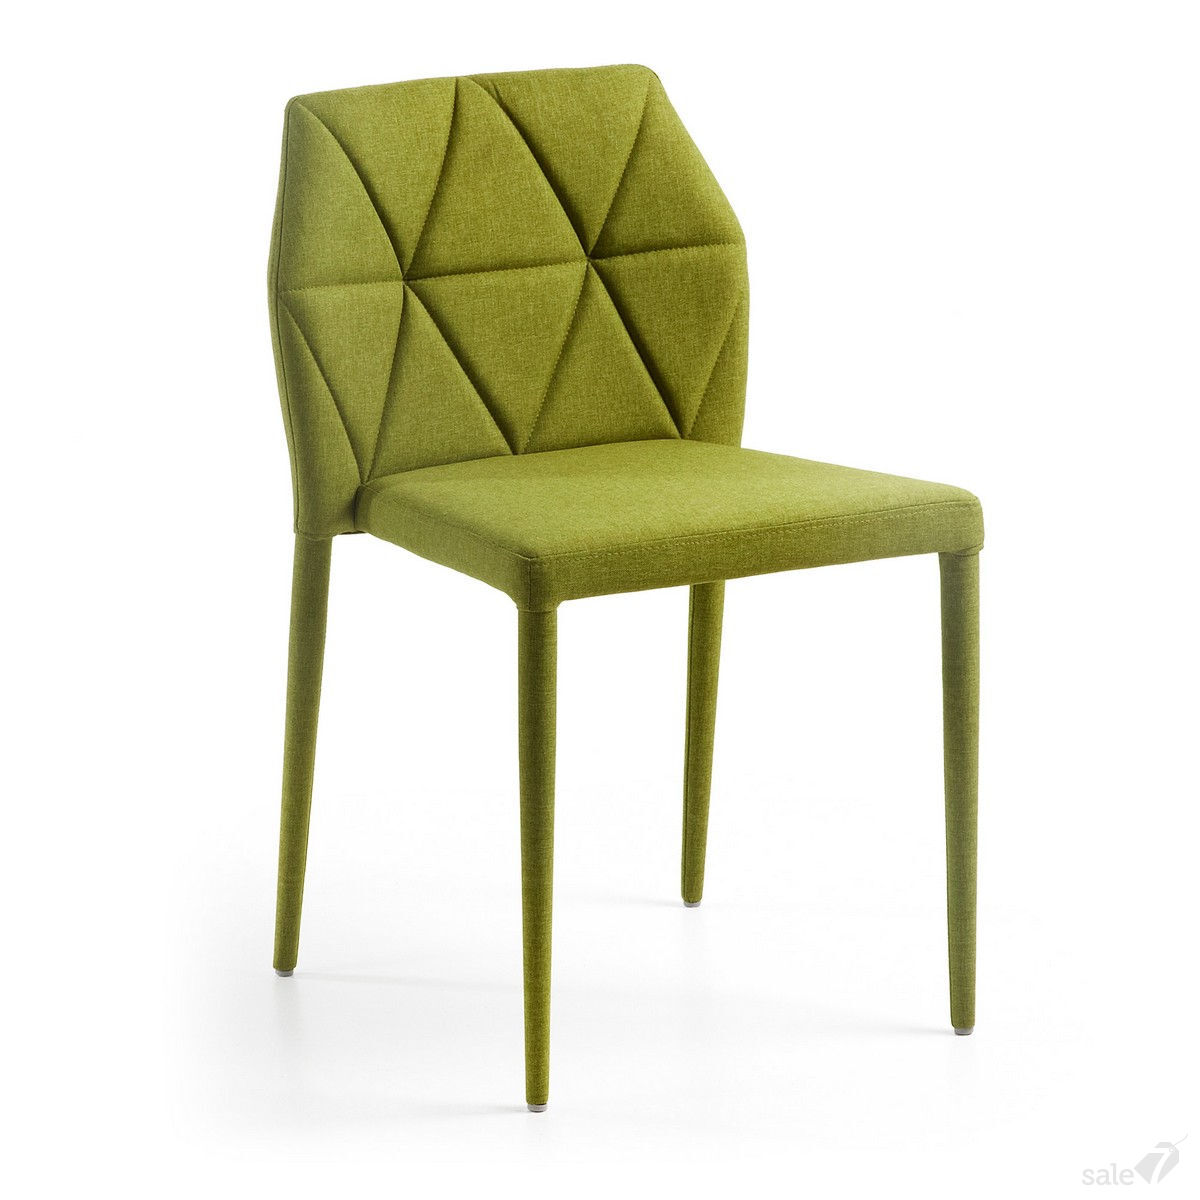 мягкие зеленые стулья для кухни